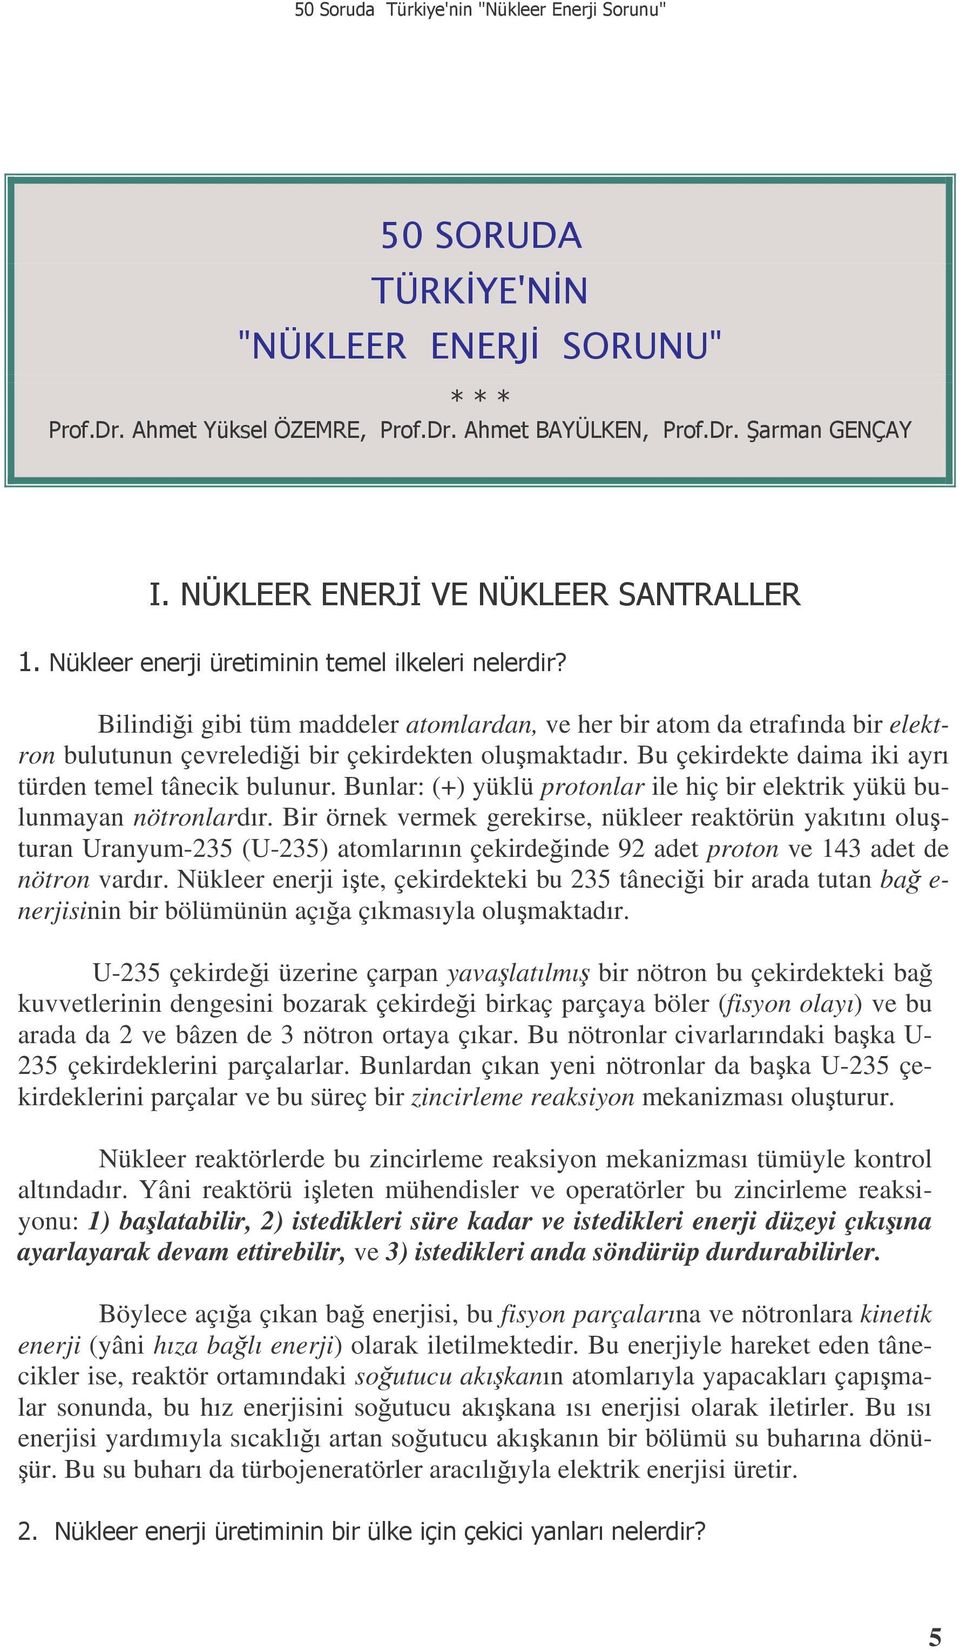 Bir örnek vermek gerekirse, nükleer reaktörün yakıtını oluturan Uranyum-235 (U-235) atomlarının çekirdeinde 92 adet proton ve 143 adet de nötron vardır.